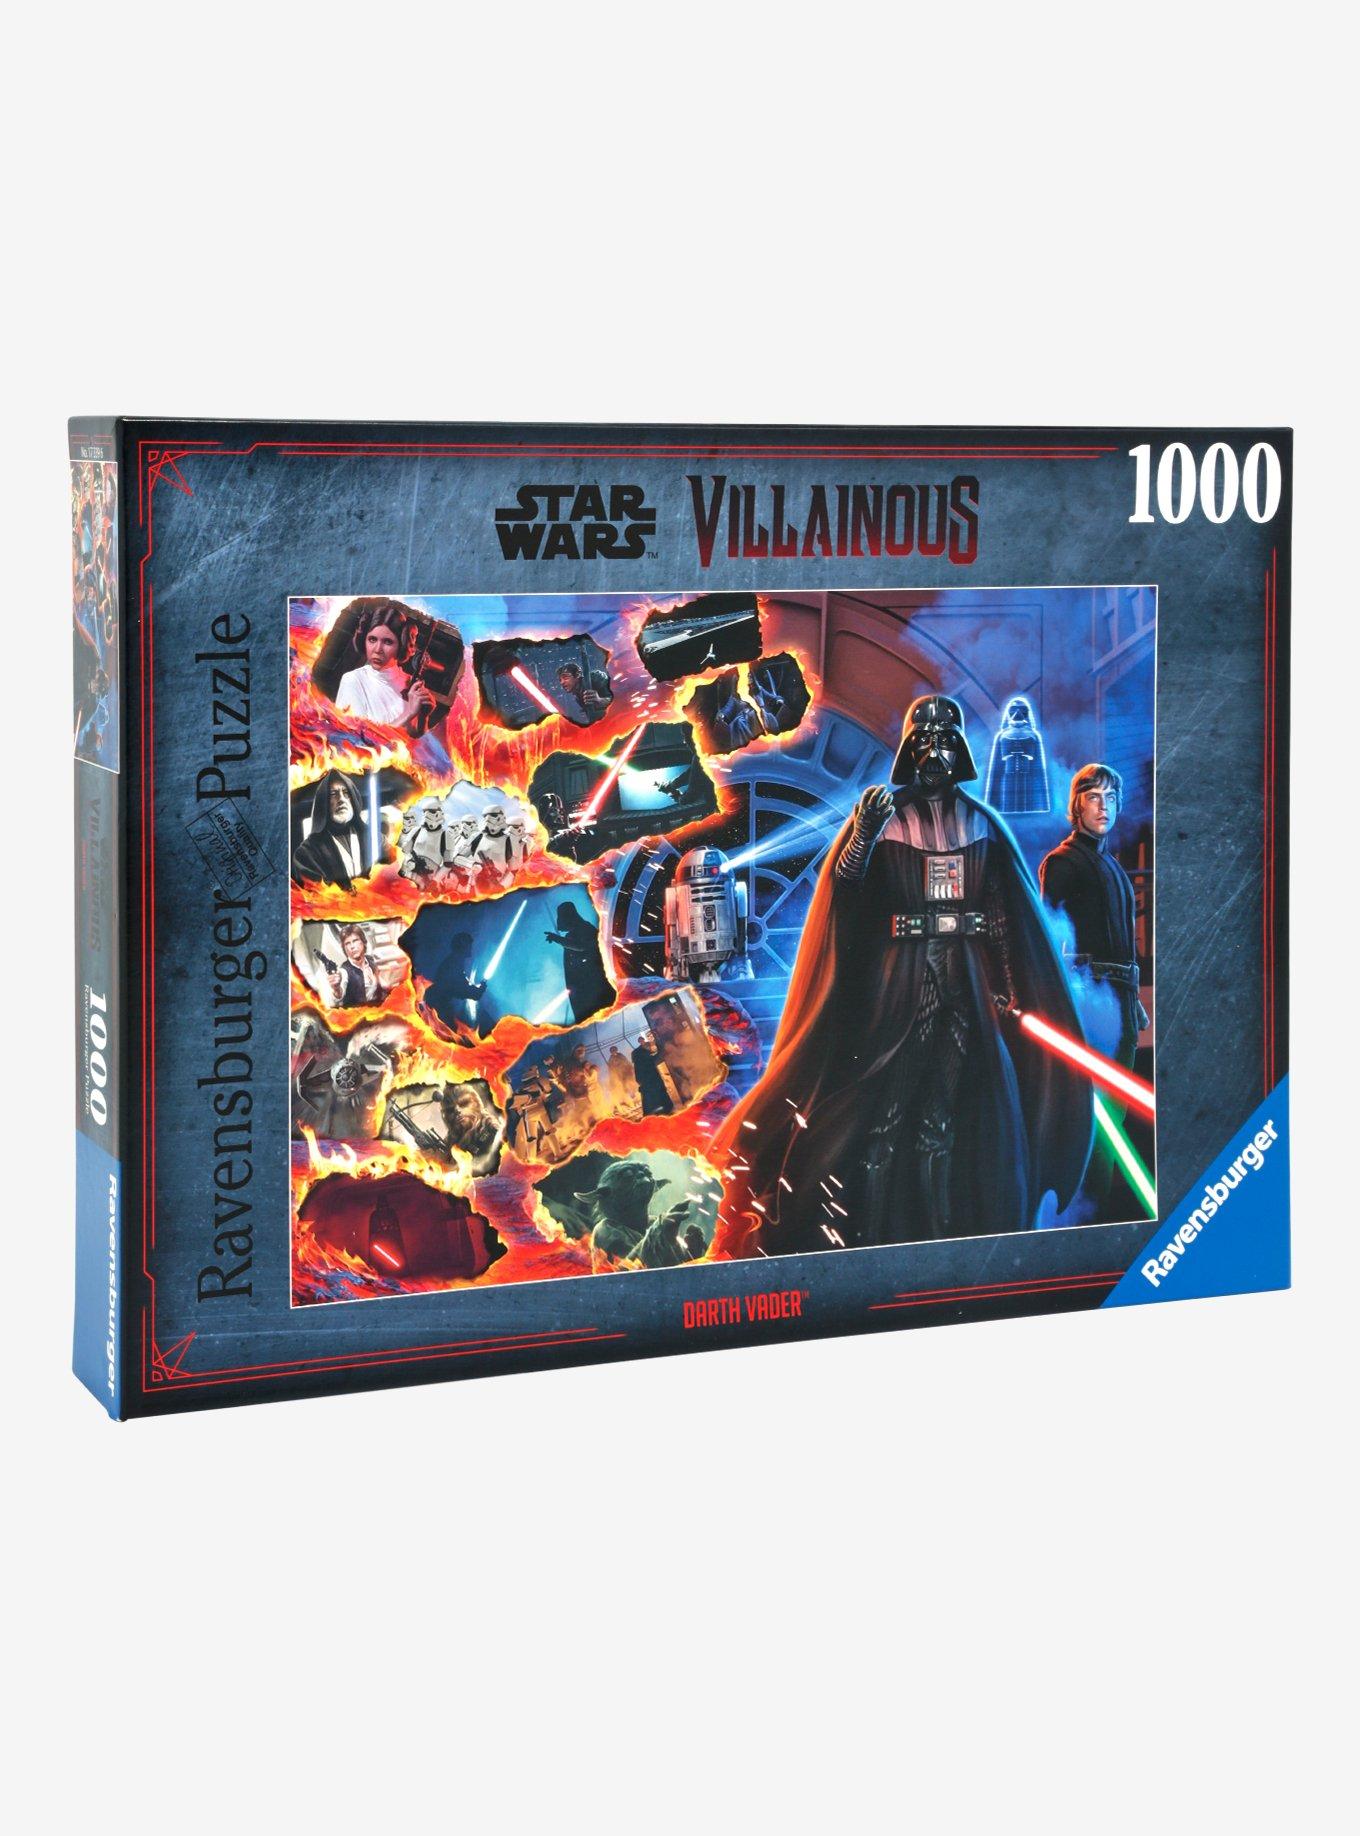 Star Wars Villainous Darth Vader 1000 Piece Puzzle